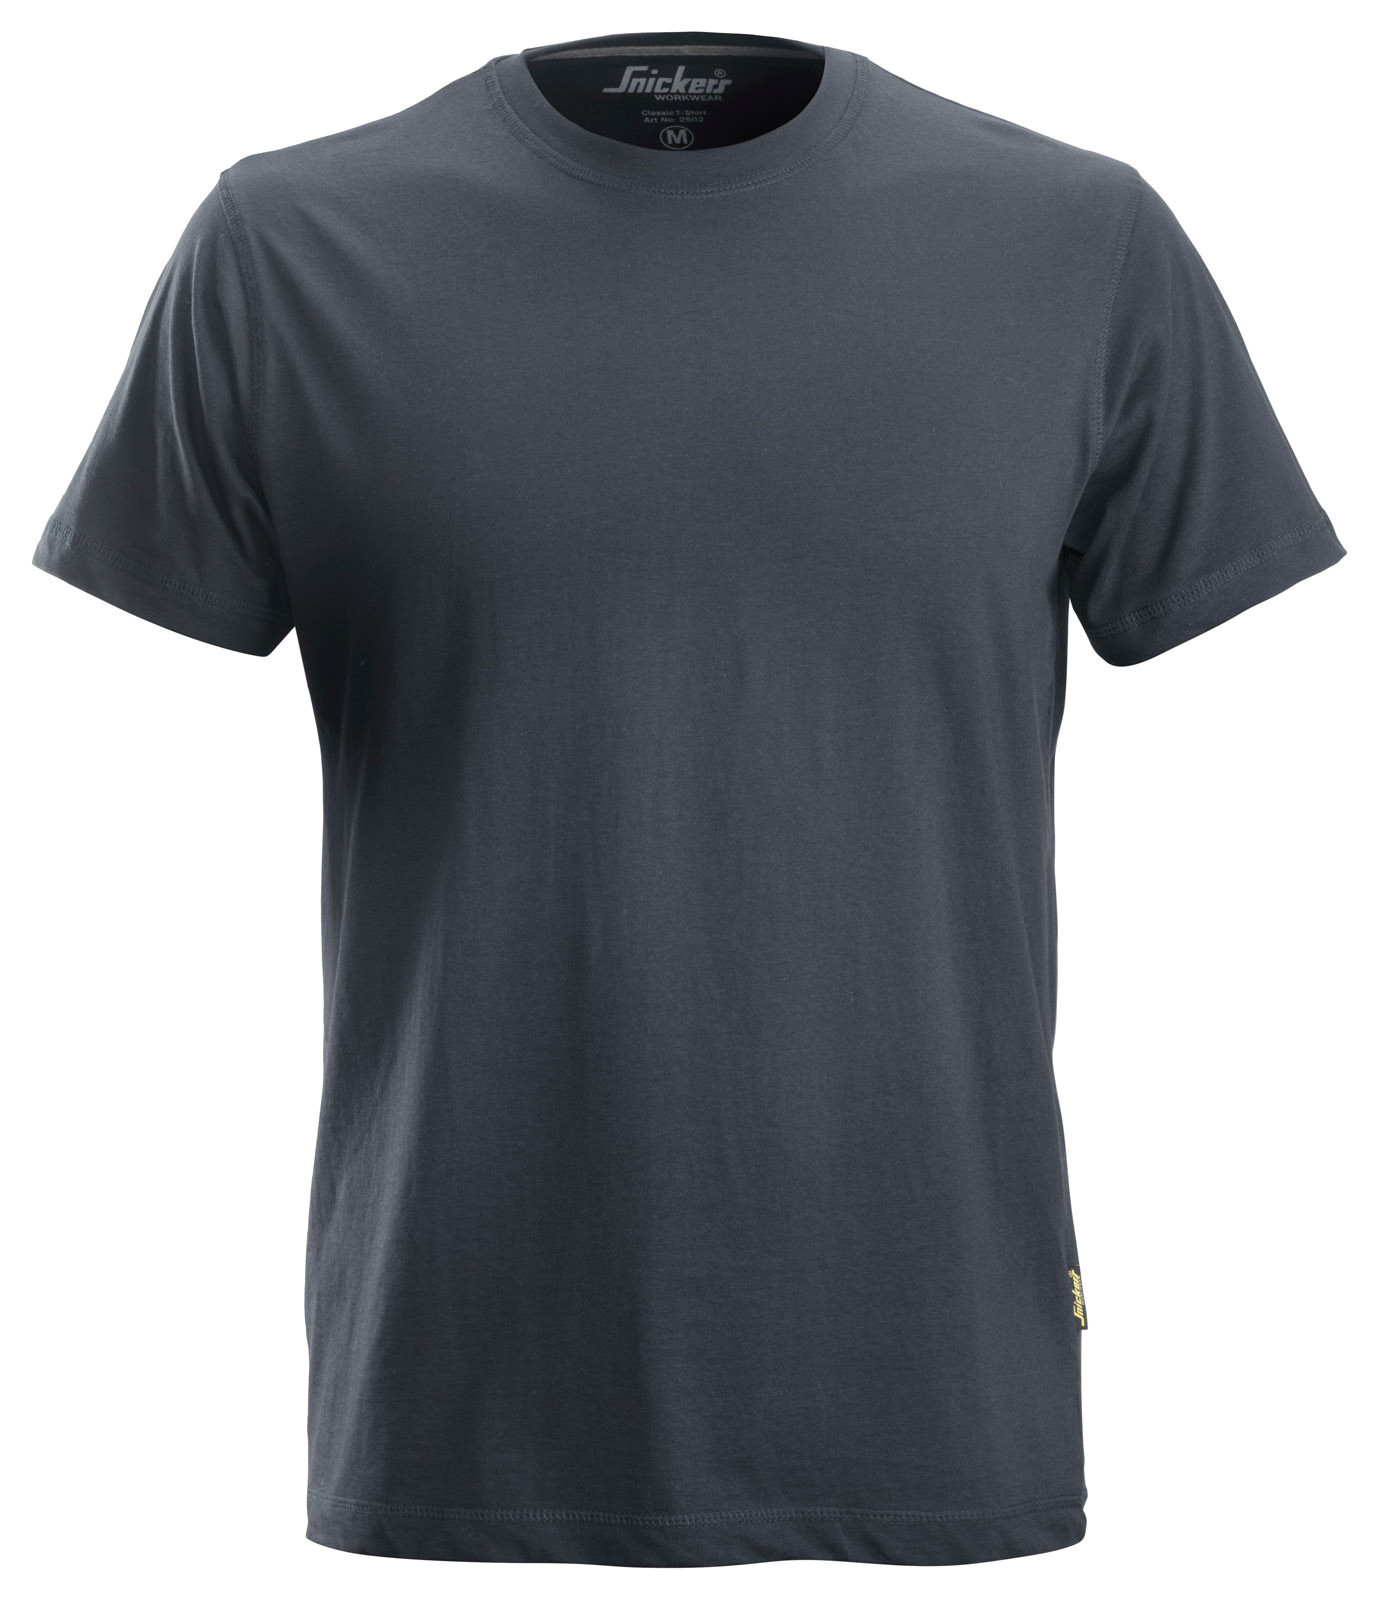 Pracovné tričko Snickers® Classic - veľkosť: M, farba: tmavo šedá